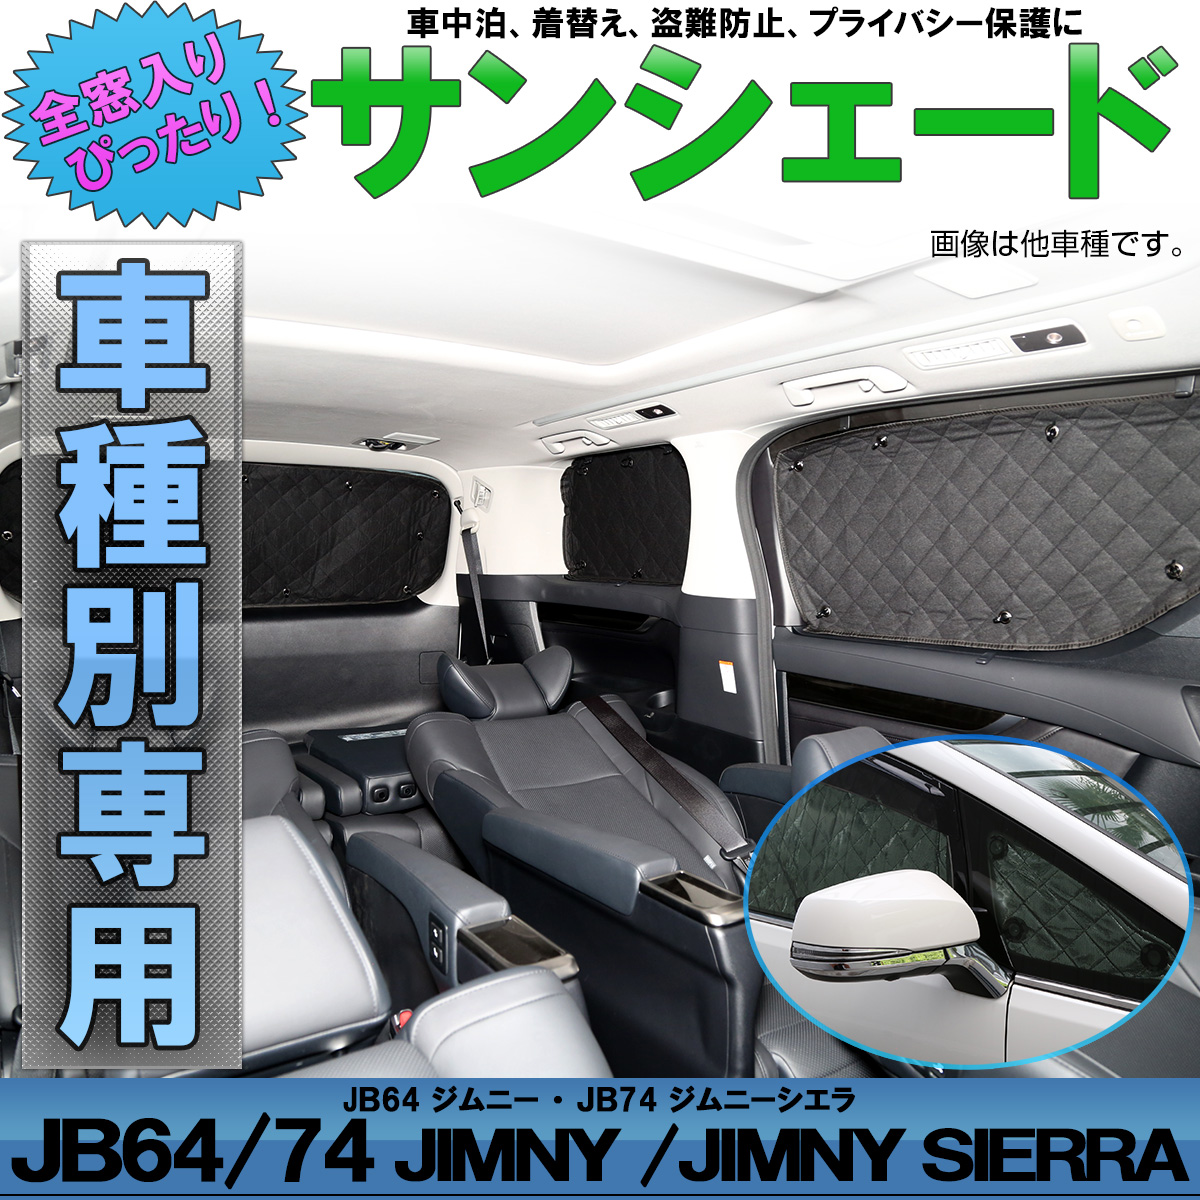 スズキ Jb64 ジムニー Jb74 ジムニー シエラ 専用設計 サンシェード 全窓用セット 5層構造 ブラックメッシュ 車中泊 プライバシー保護 S 807